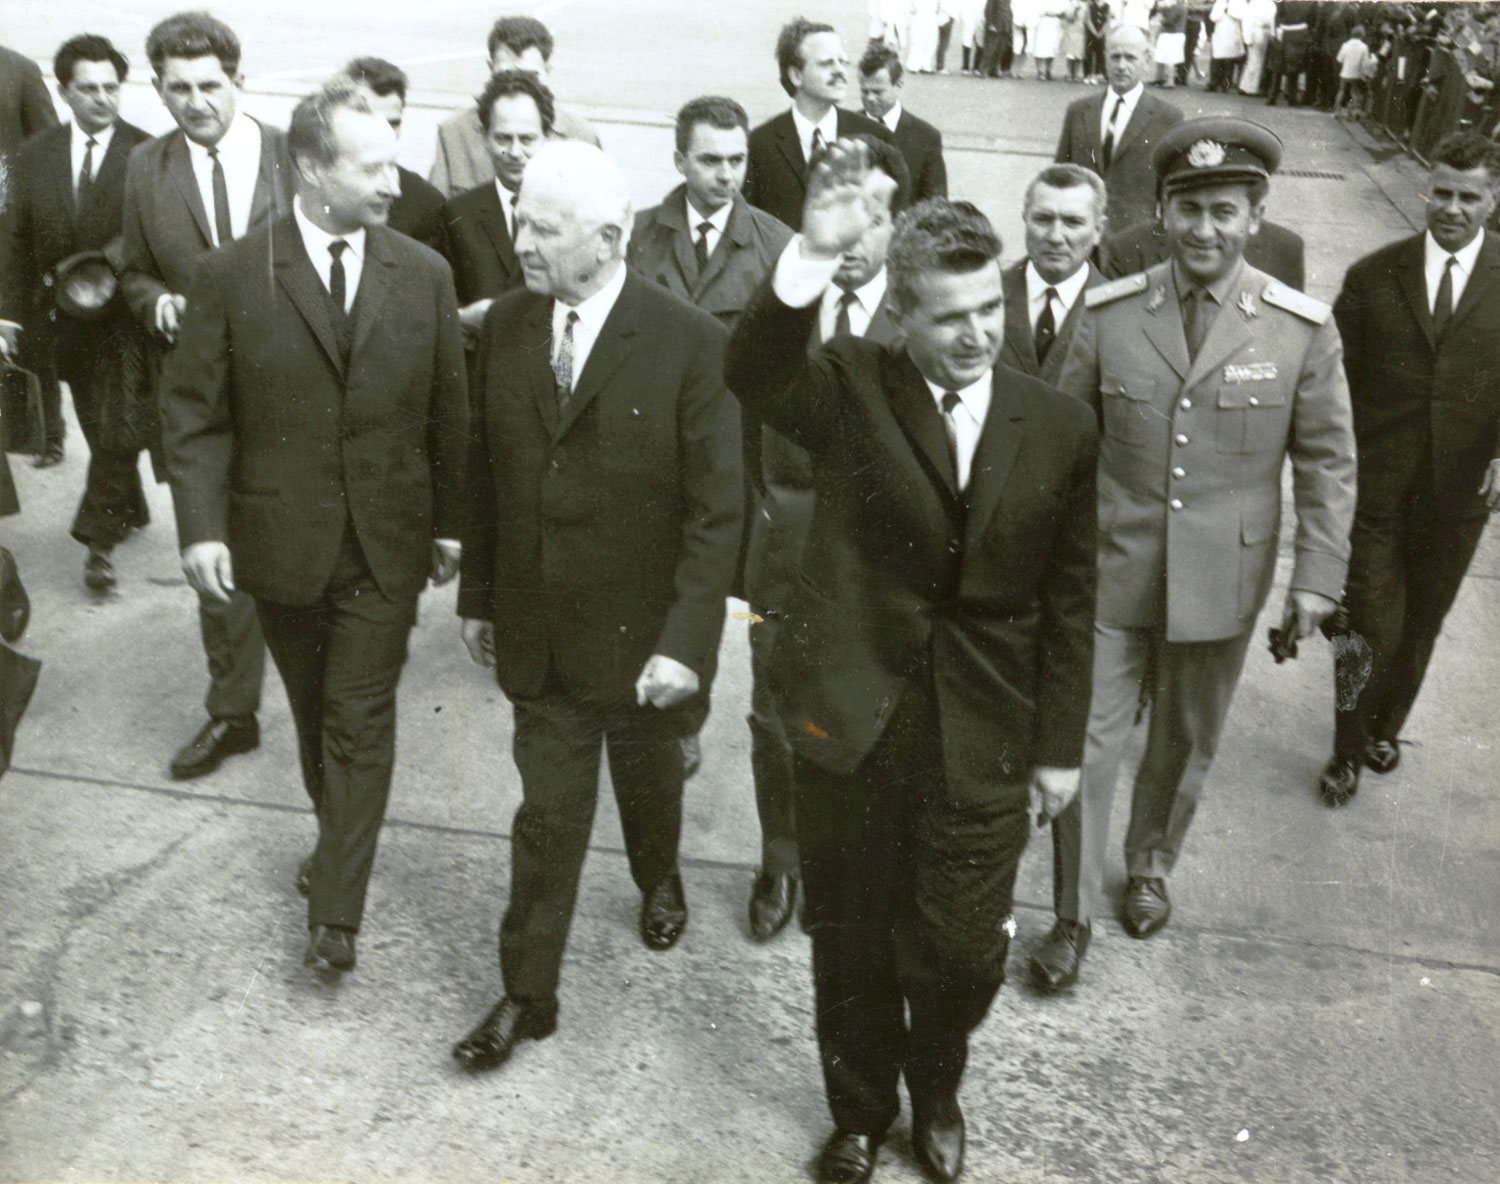 Николае Чаушеску (в центре) и Людвик Свобода (слева) в августе 1968 года во время визита в Чехословакию. Александр Дубчек — в первом ряду, первый слева